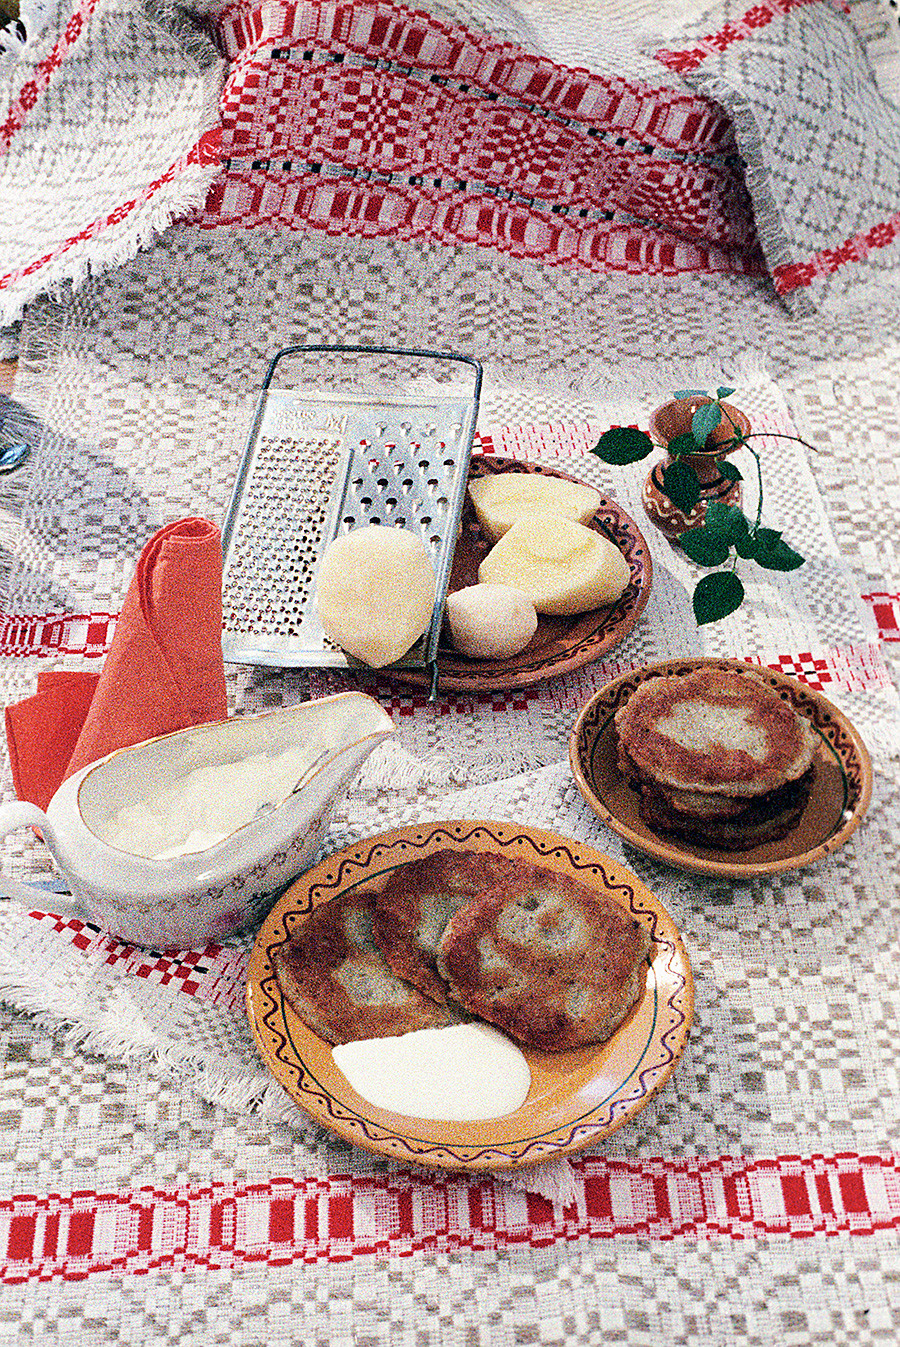 Potato pancakes, 1987  